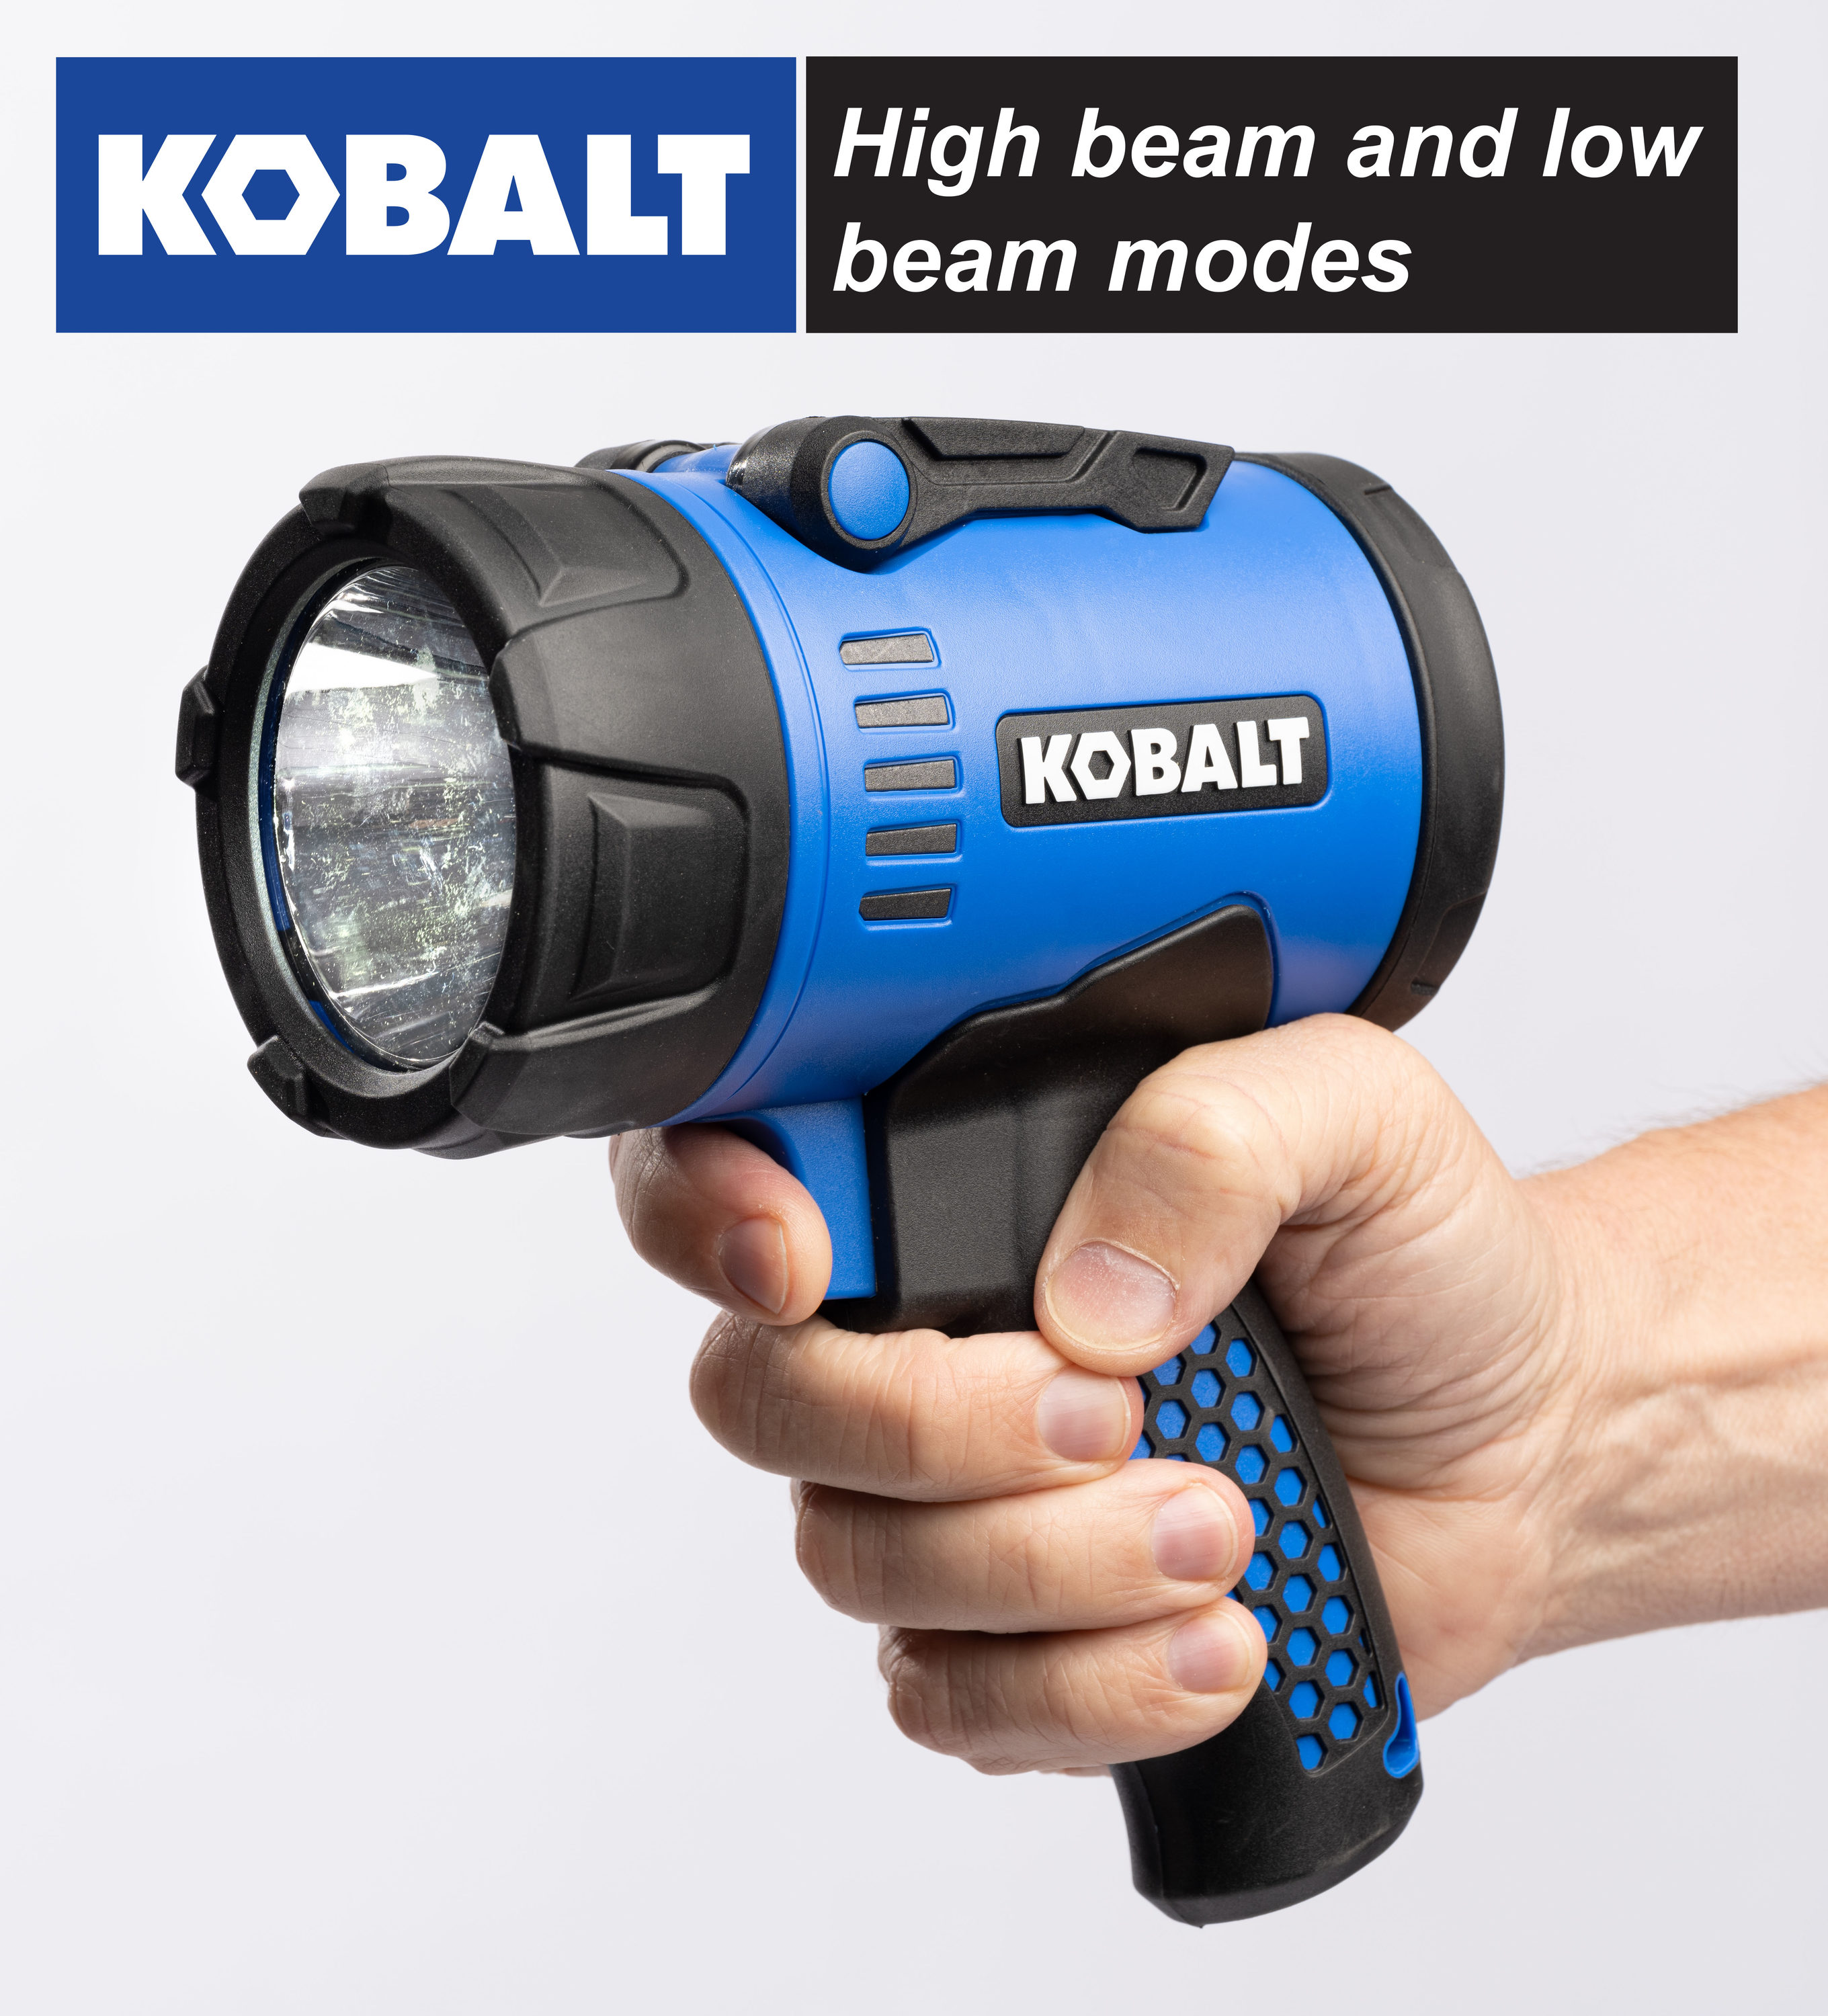 Kobalt 1200-Lumen LED Rechargeable Spotlight Flashlight - Each